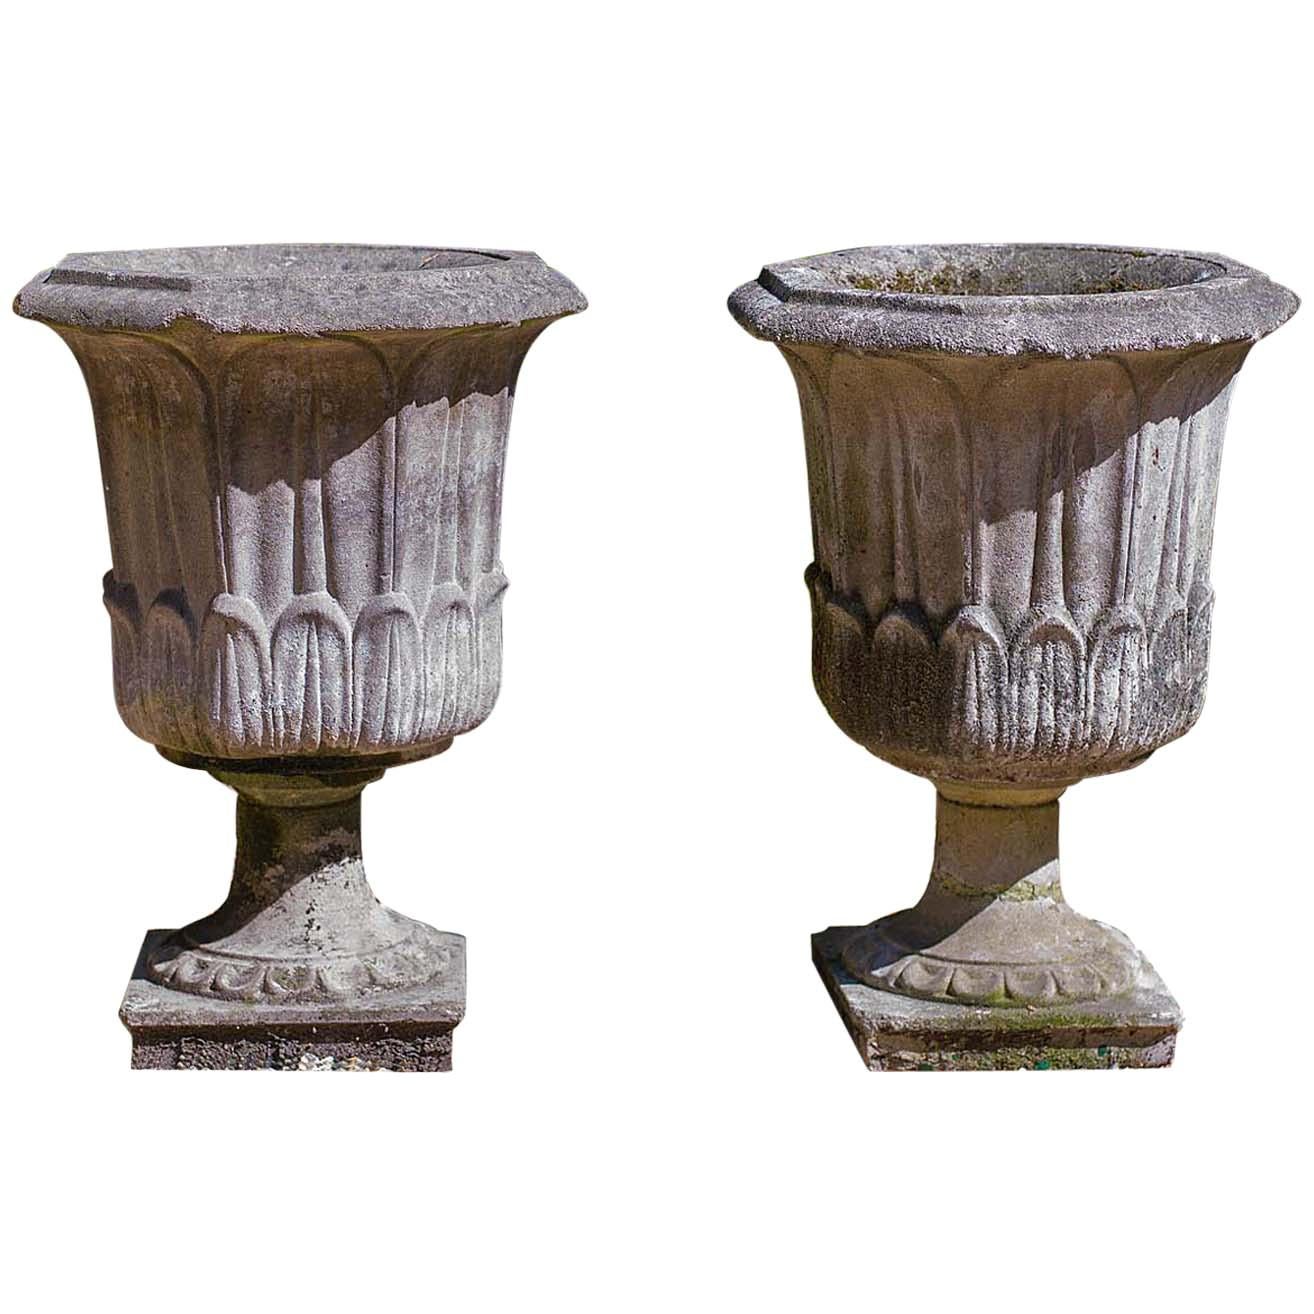 Pair of Octagonal Reconstituted Stone Urns